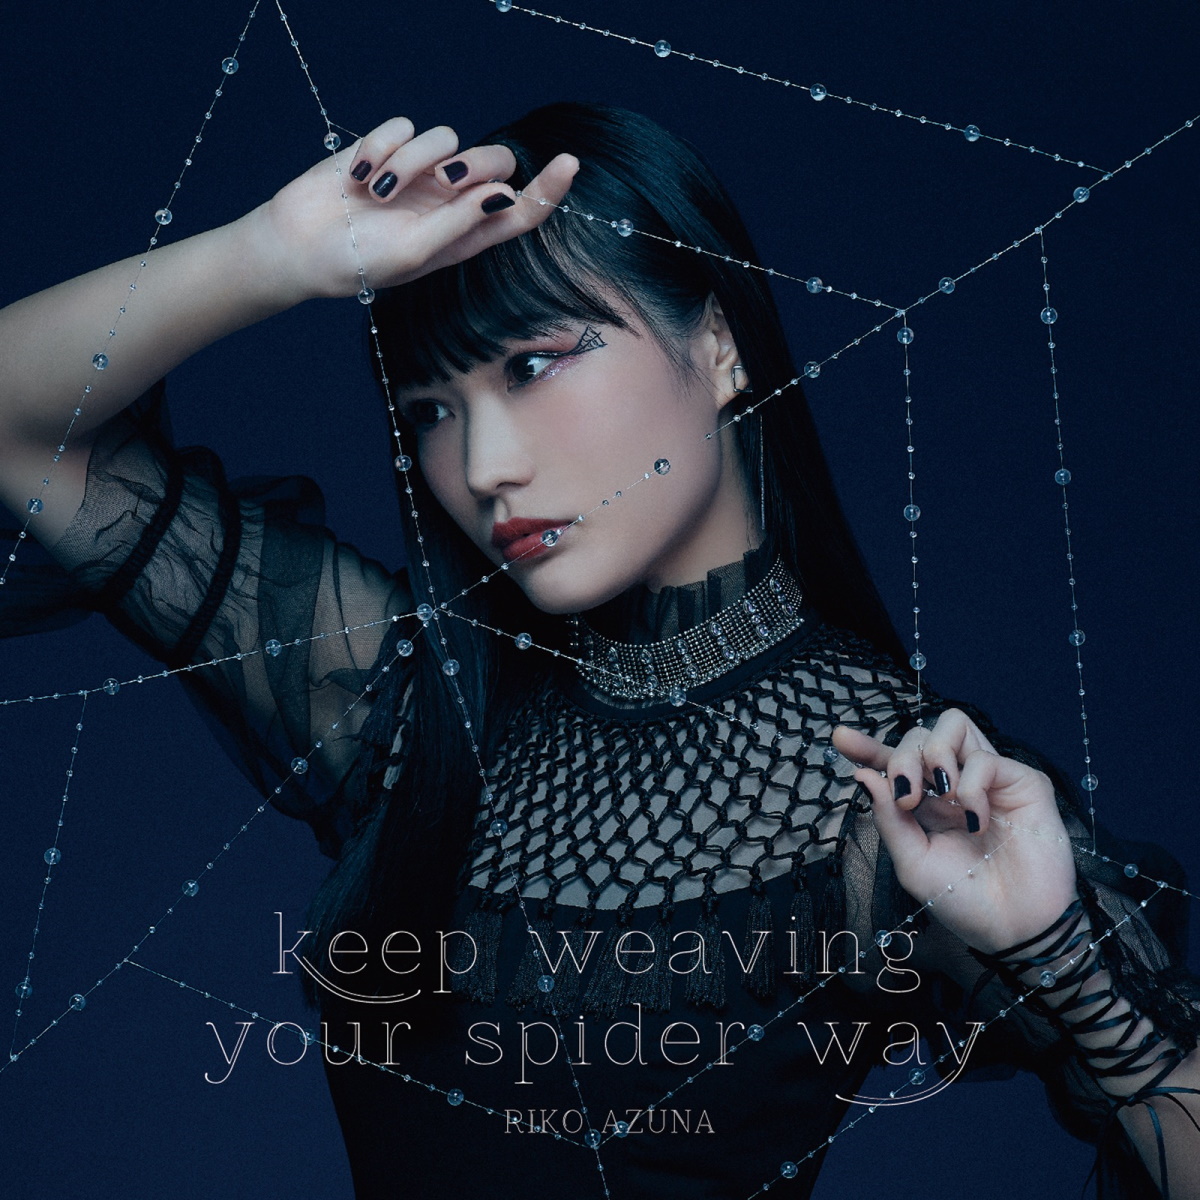 『安月名莉子 - keep weaving your spider way 歌詞』収録の『keep weaving your spider way』ジャケット